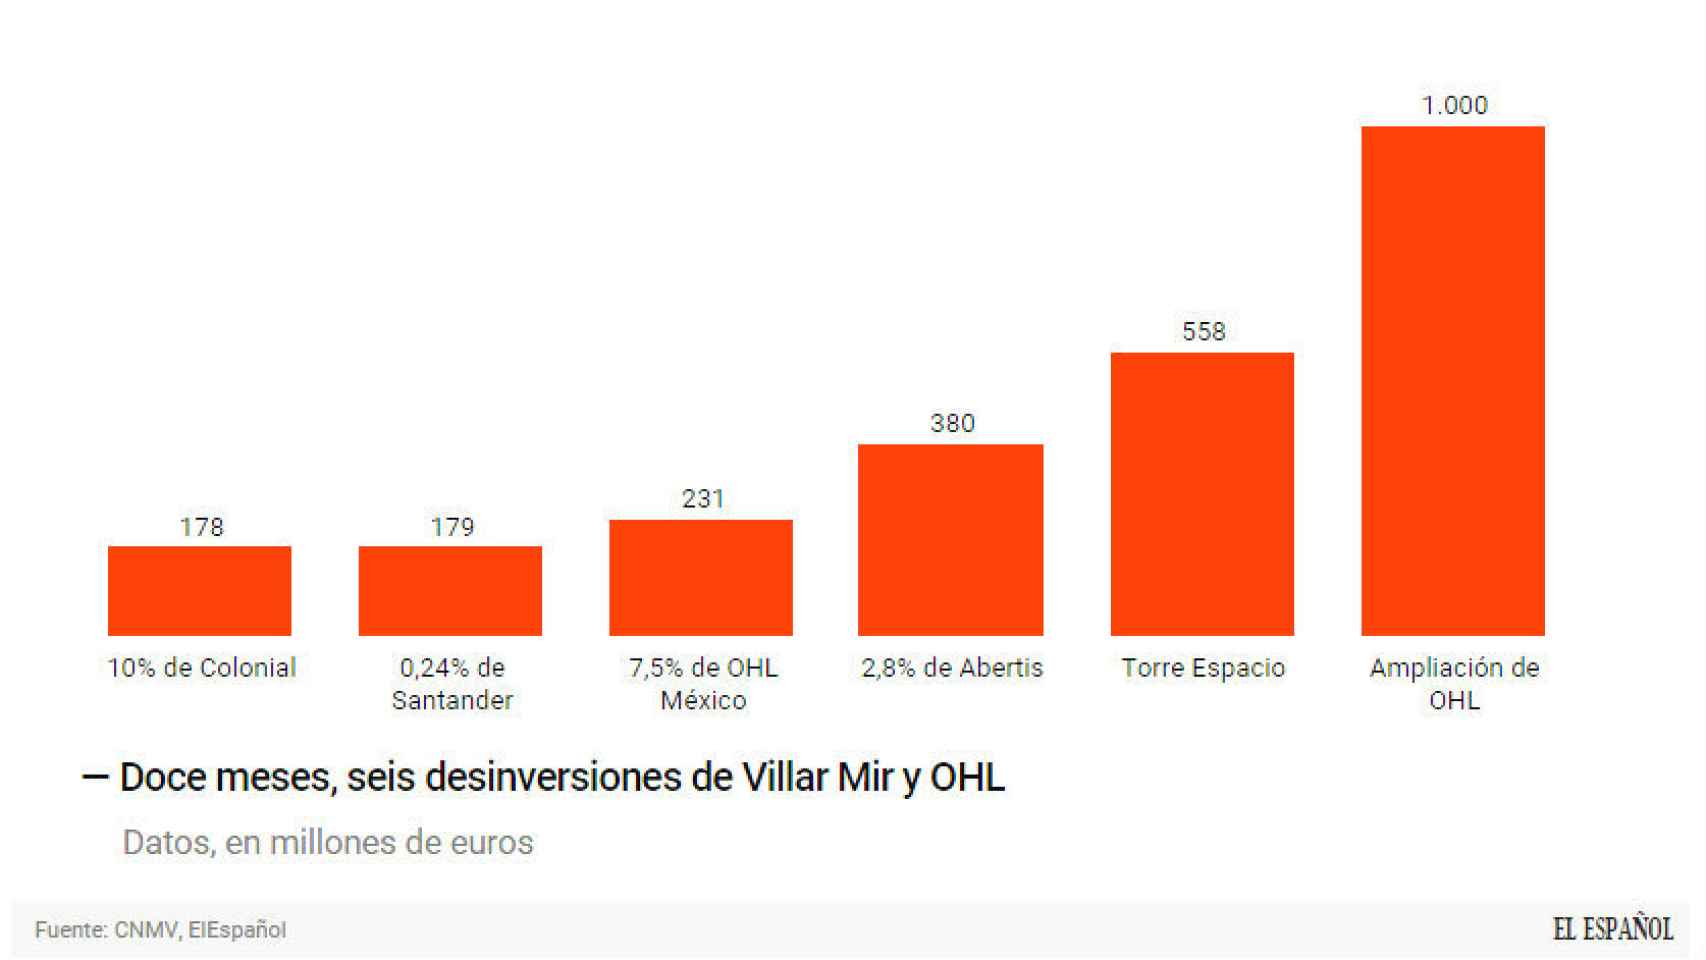 Las ventas de Villar Mir y OHL.